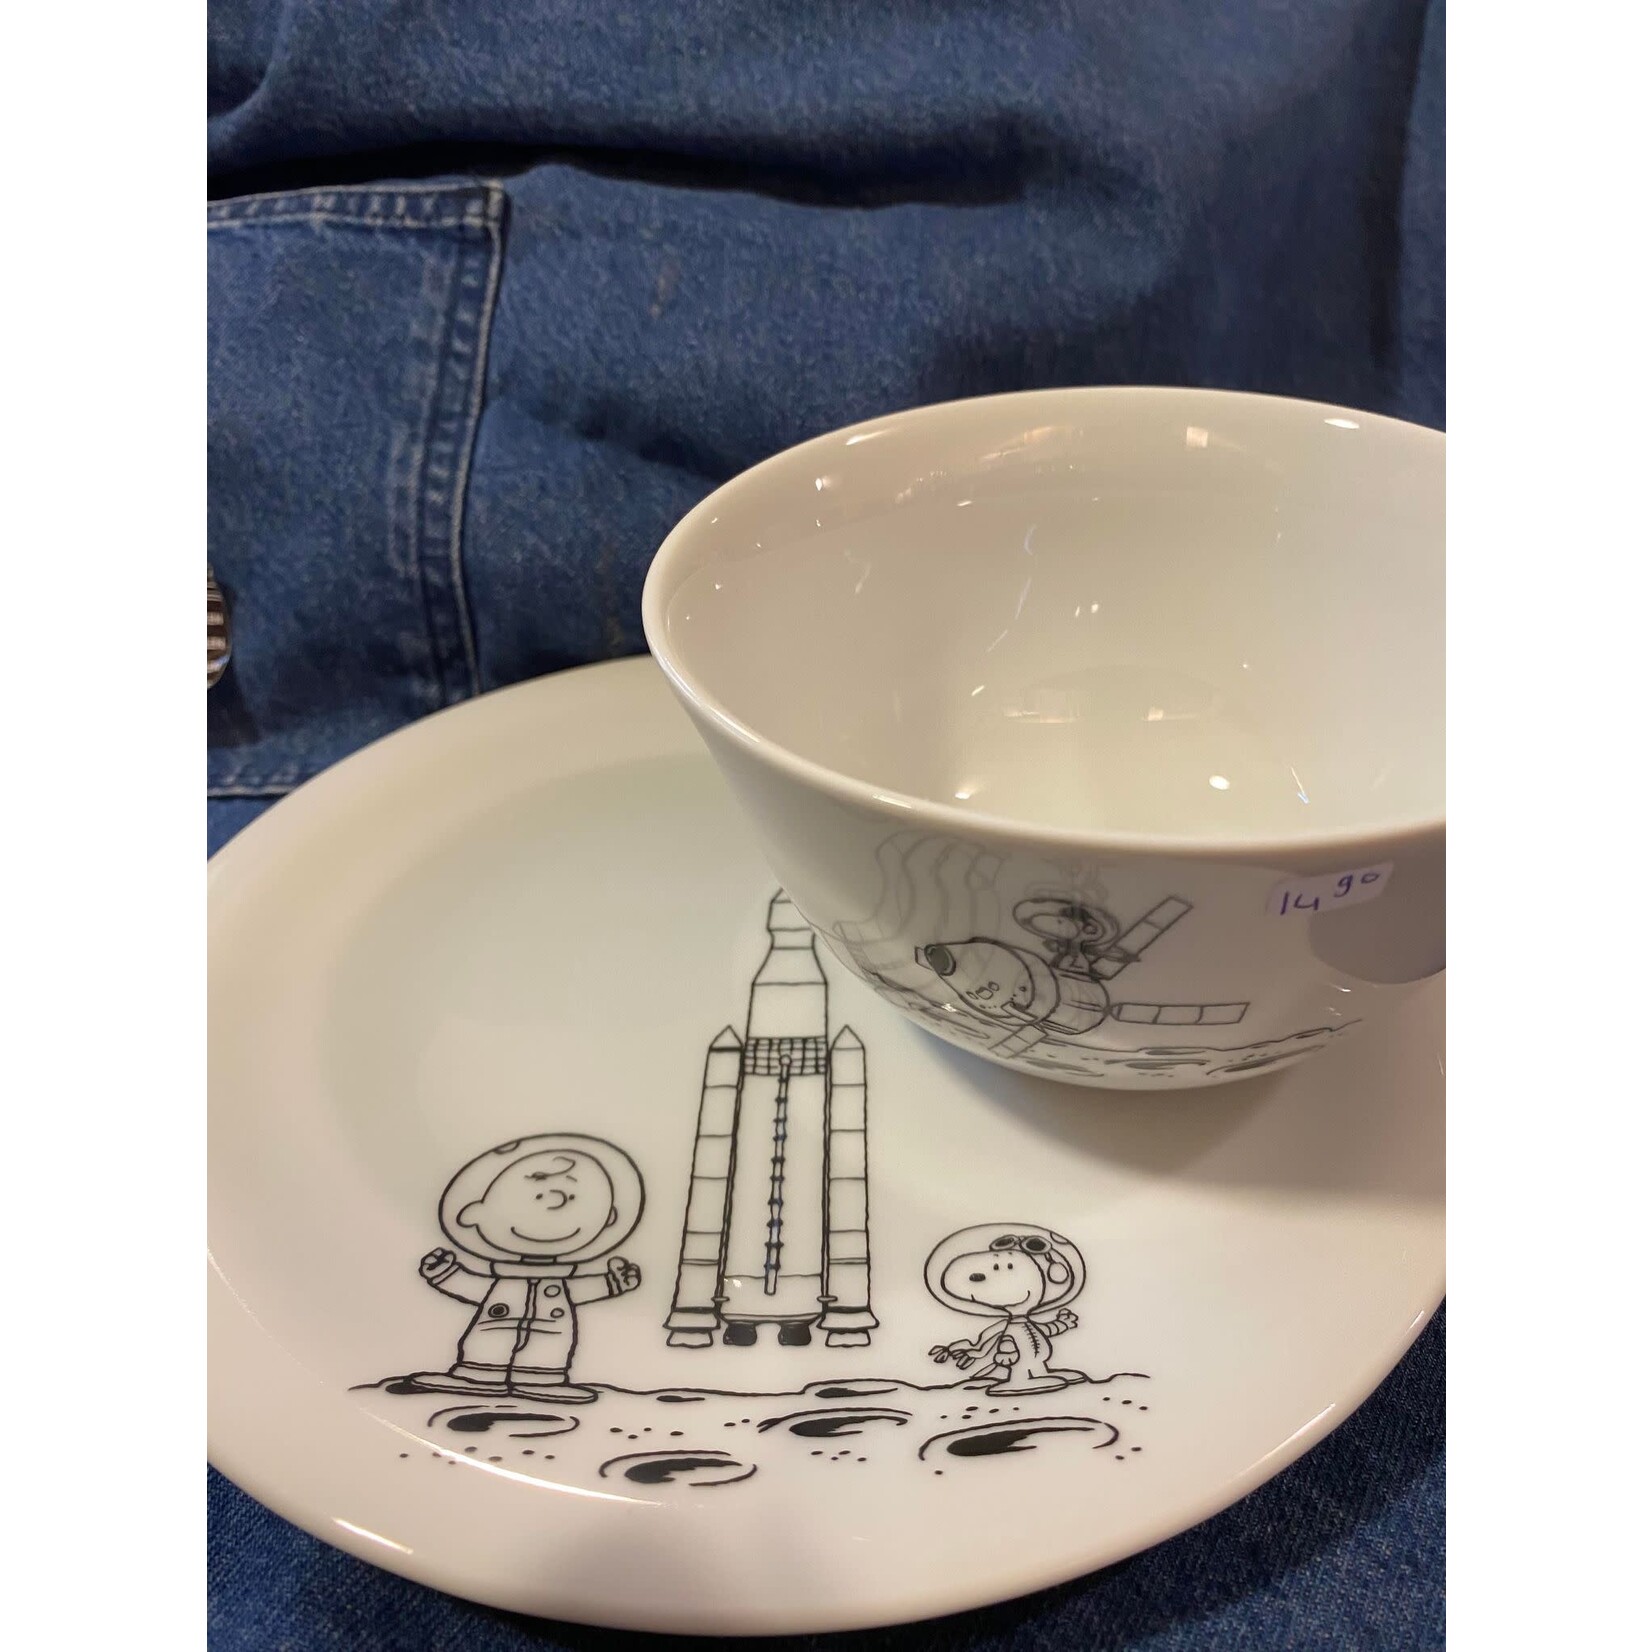 Diverse Merken Snoopy Servies 500 ml bowl Snoopy Peanuts Space Kahla 50982-schaaltje